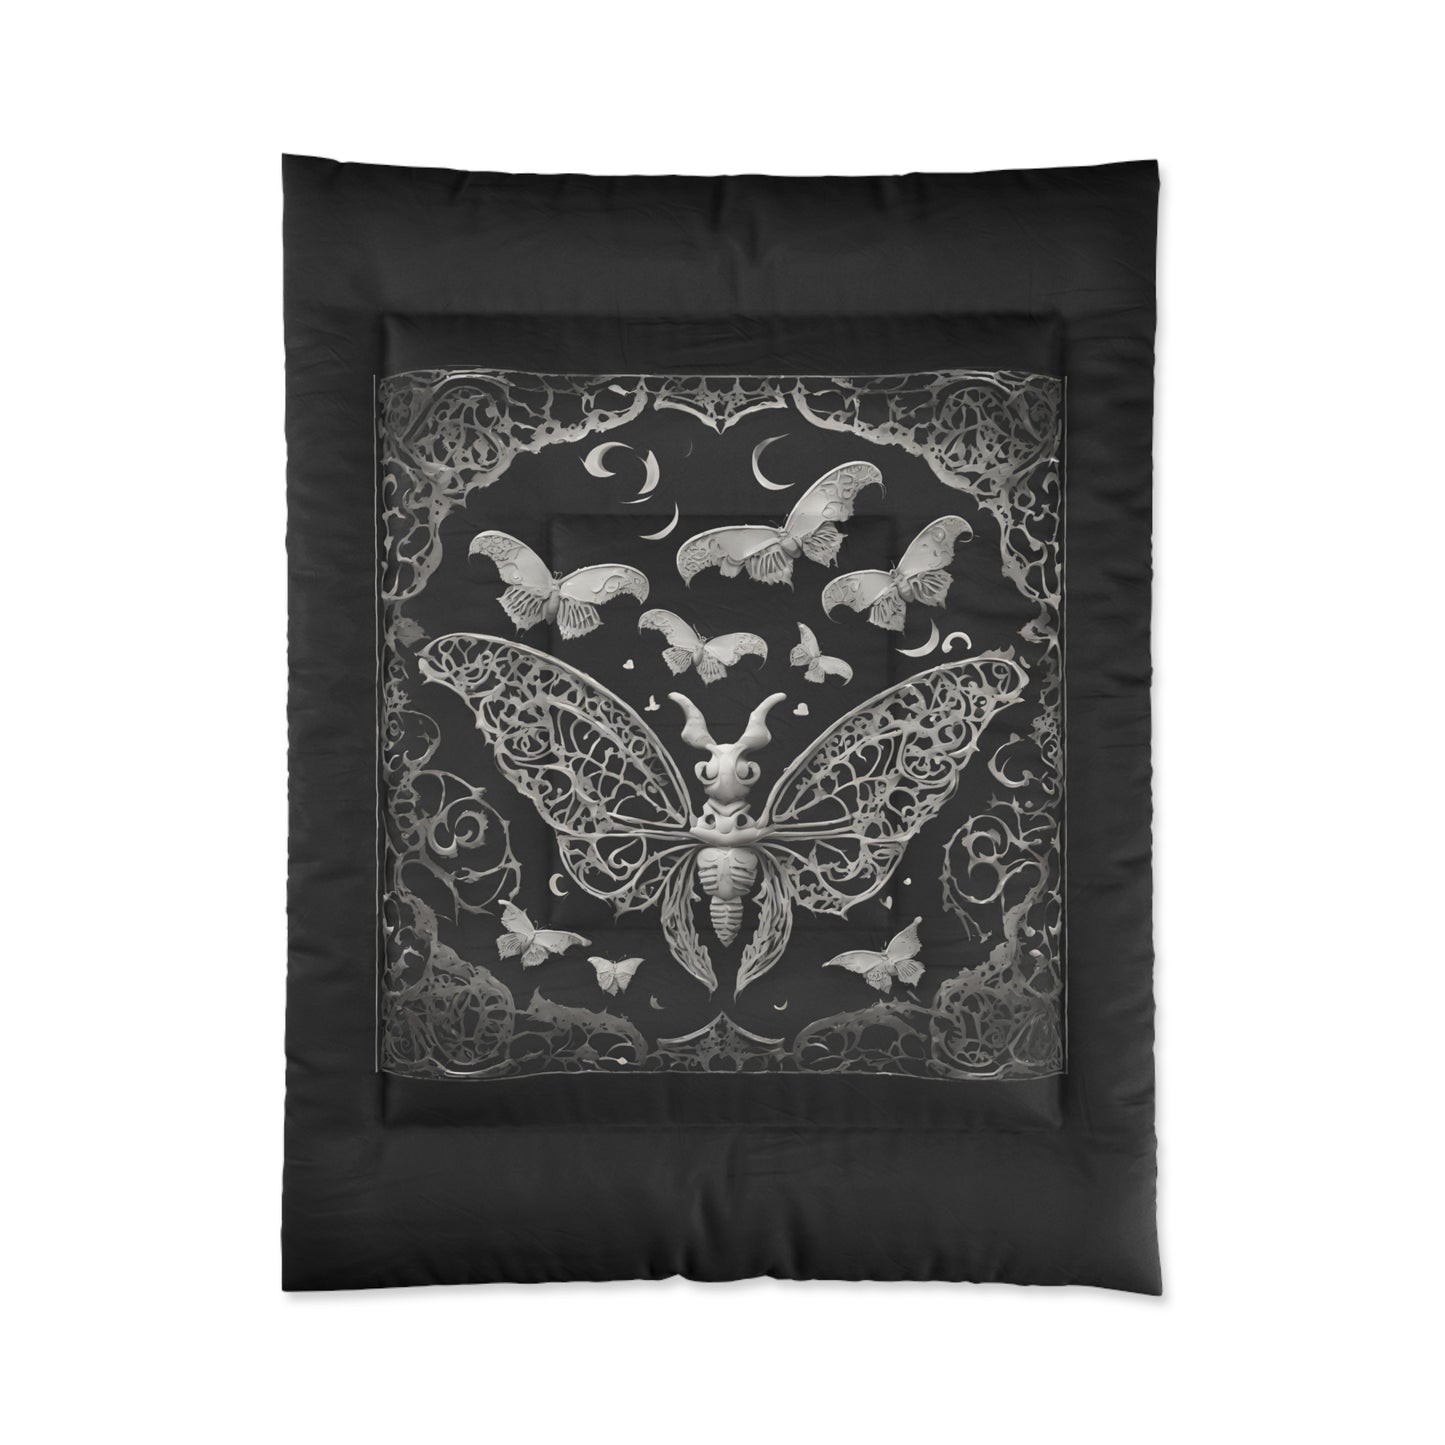 Dream Moths Comforter